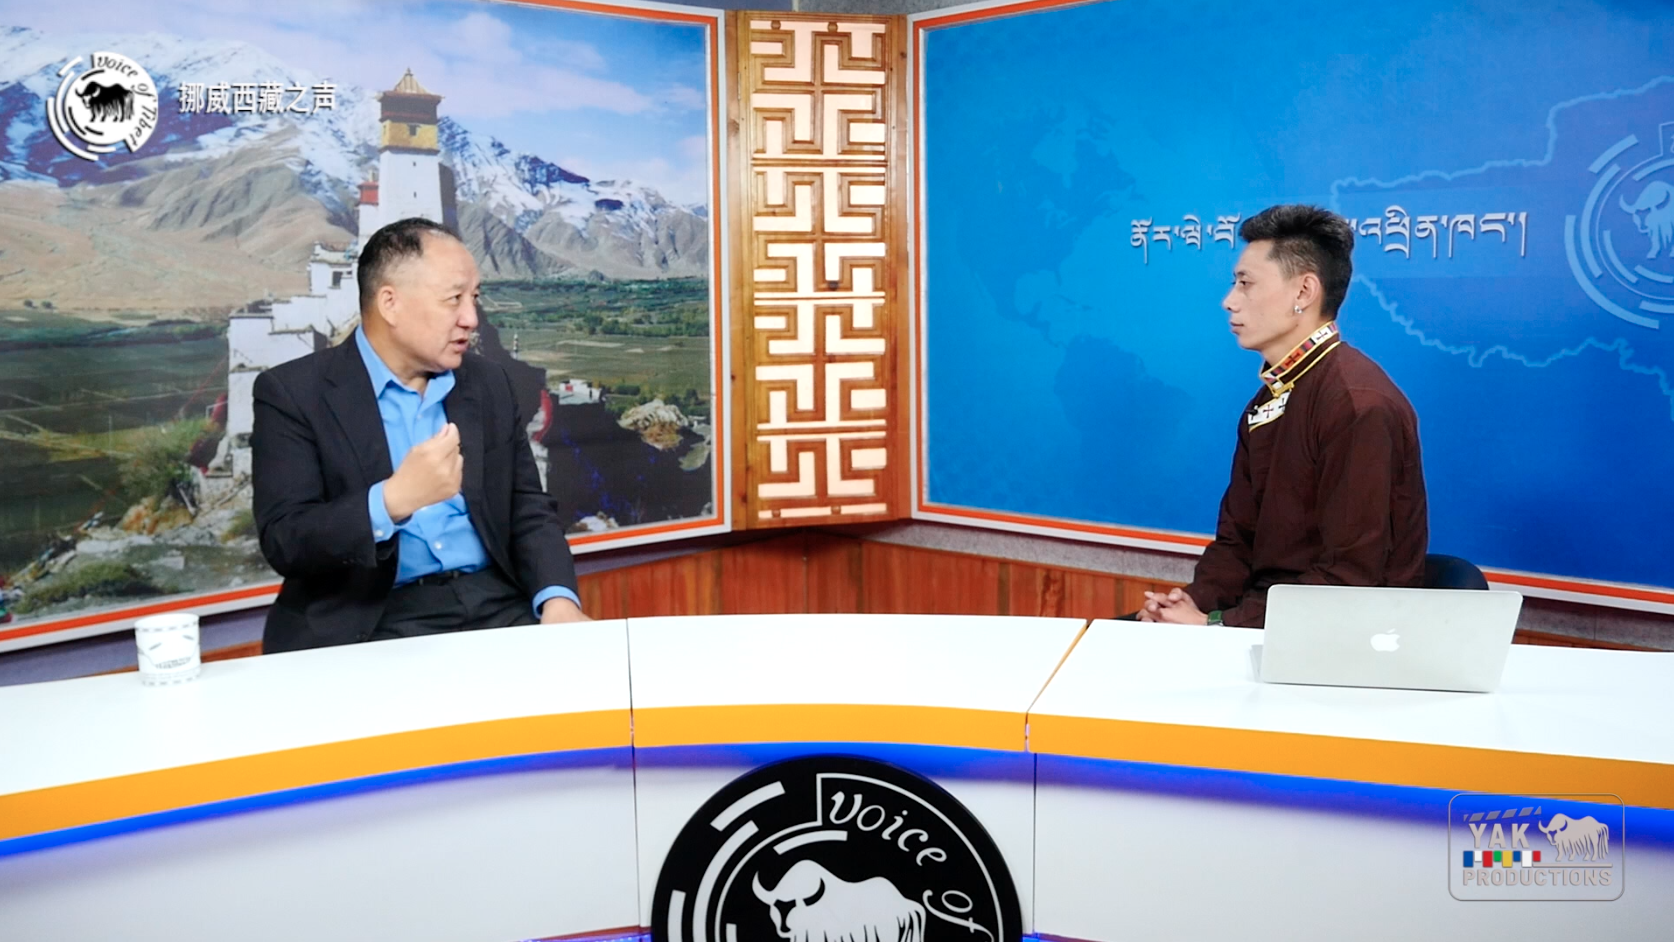 藏人行政中央智库“西藏政策研究中心”主任达瓦才仁访谈